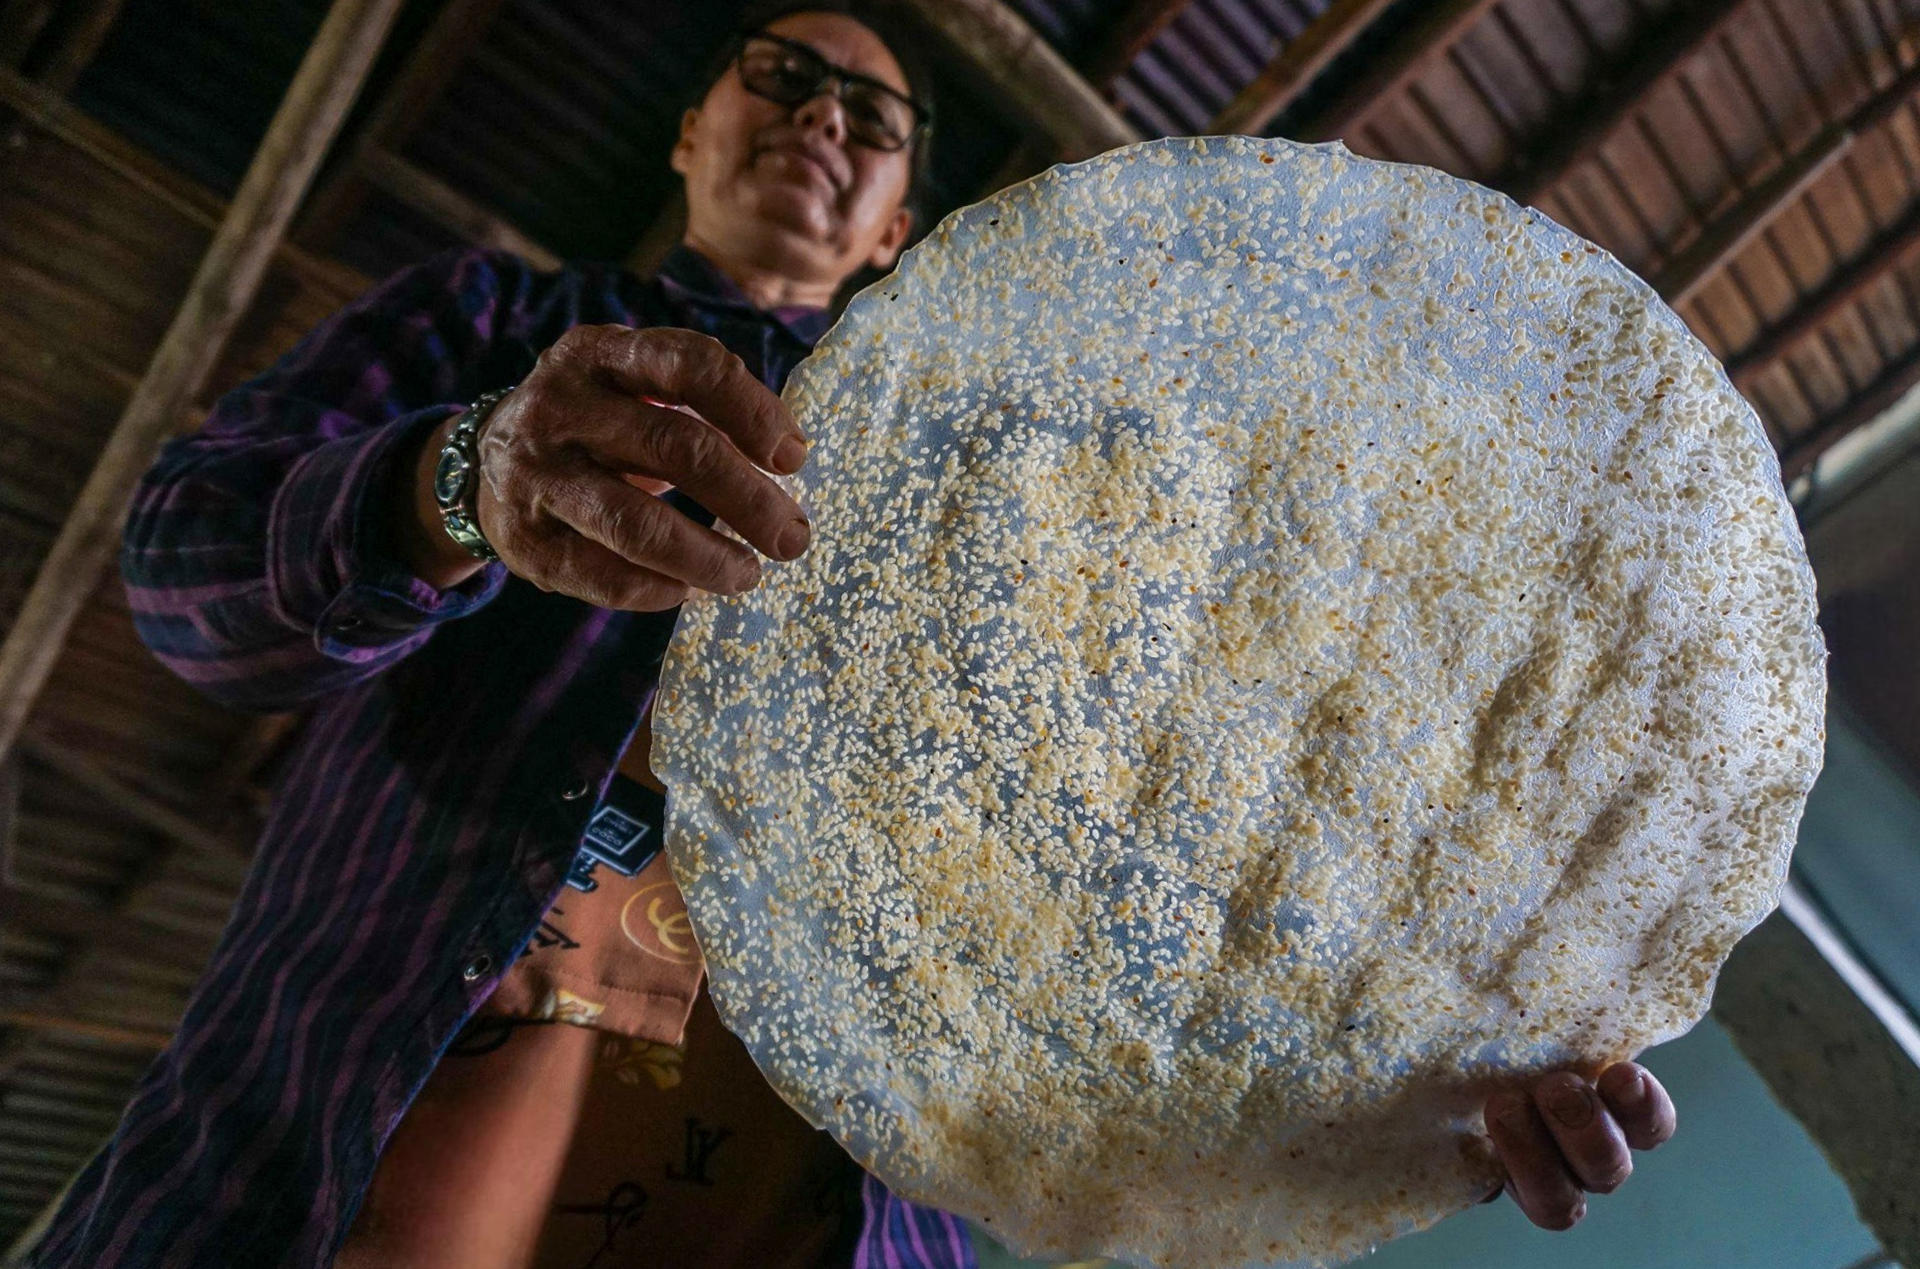 Có gì đặc biệt ở làng nghề bánh tráng Túy Loan vừa được công nhận là di sản văn hoá? - Ảnh 11.